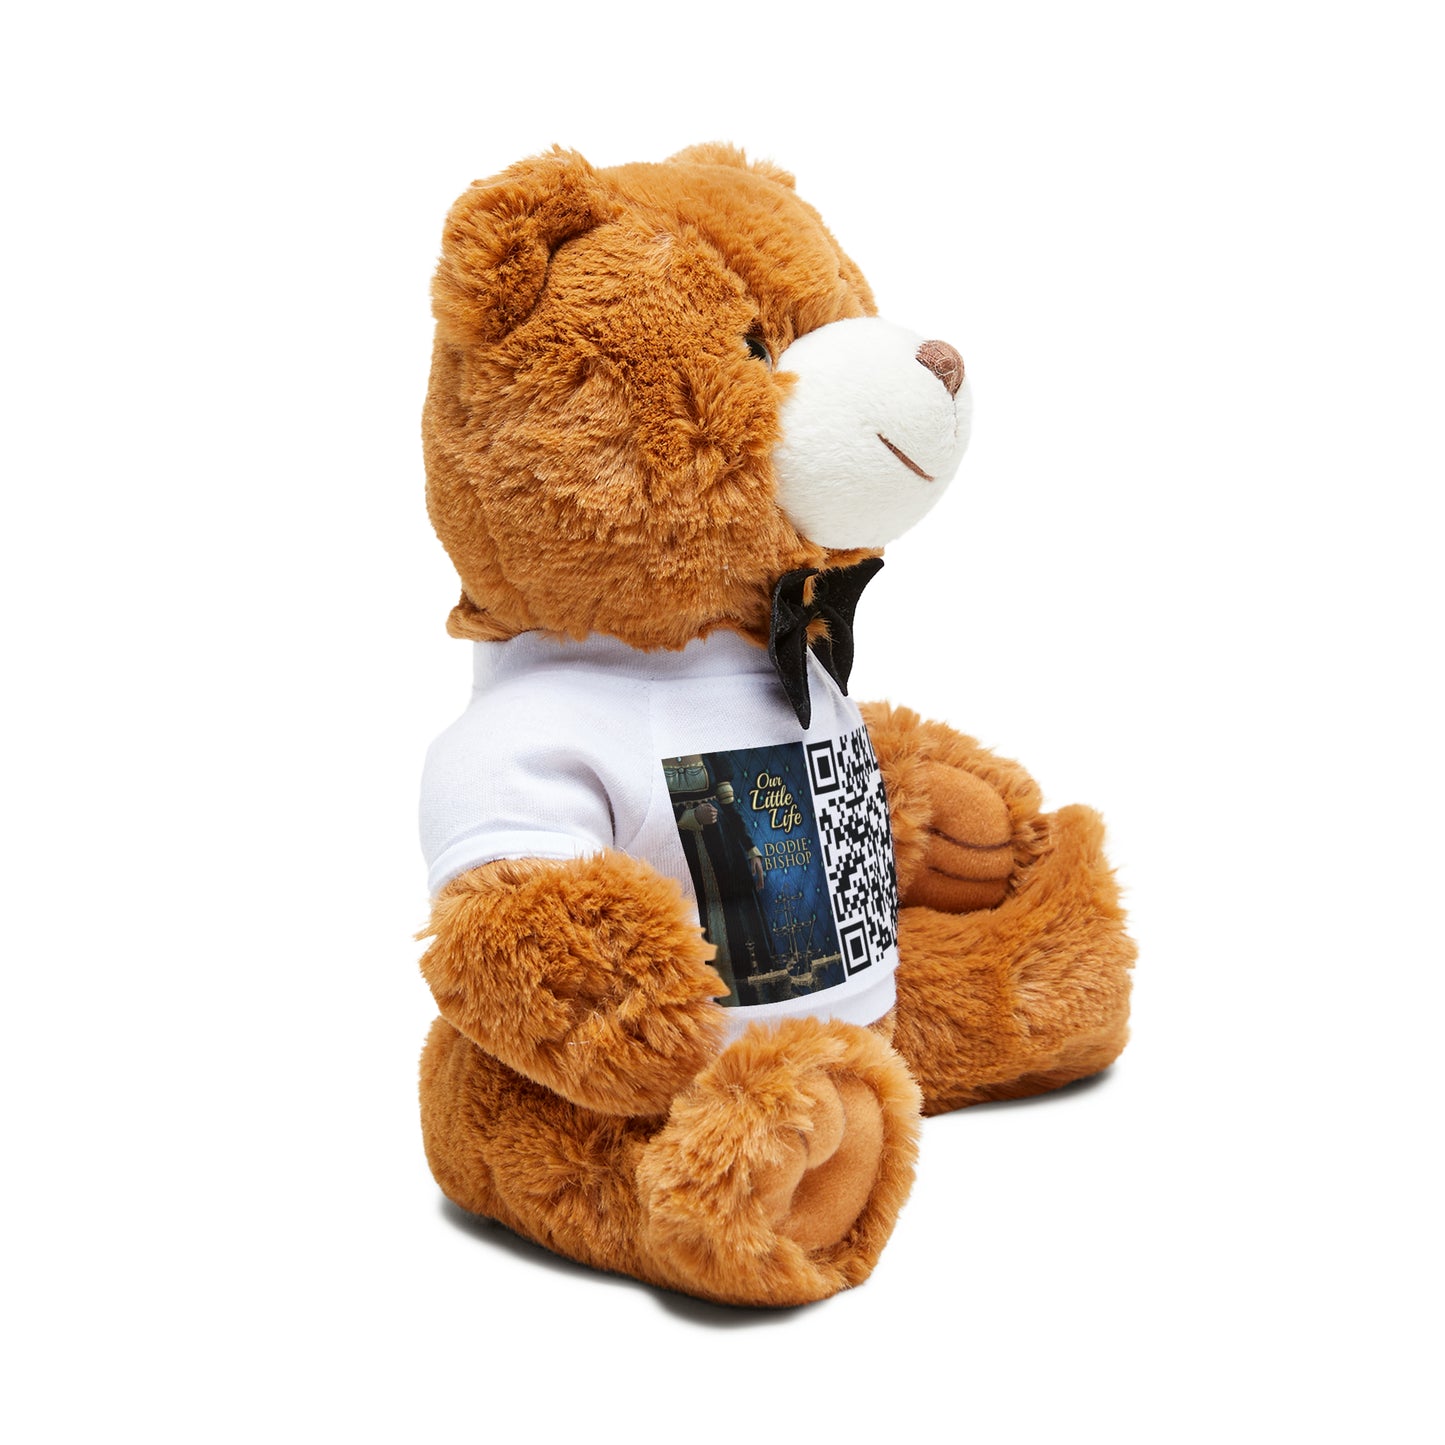 Our Little Life - Teddy Bear